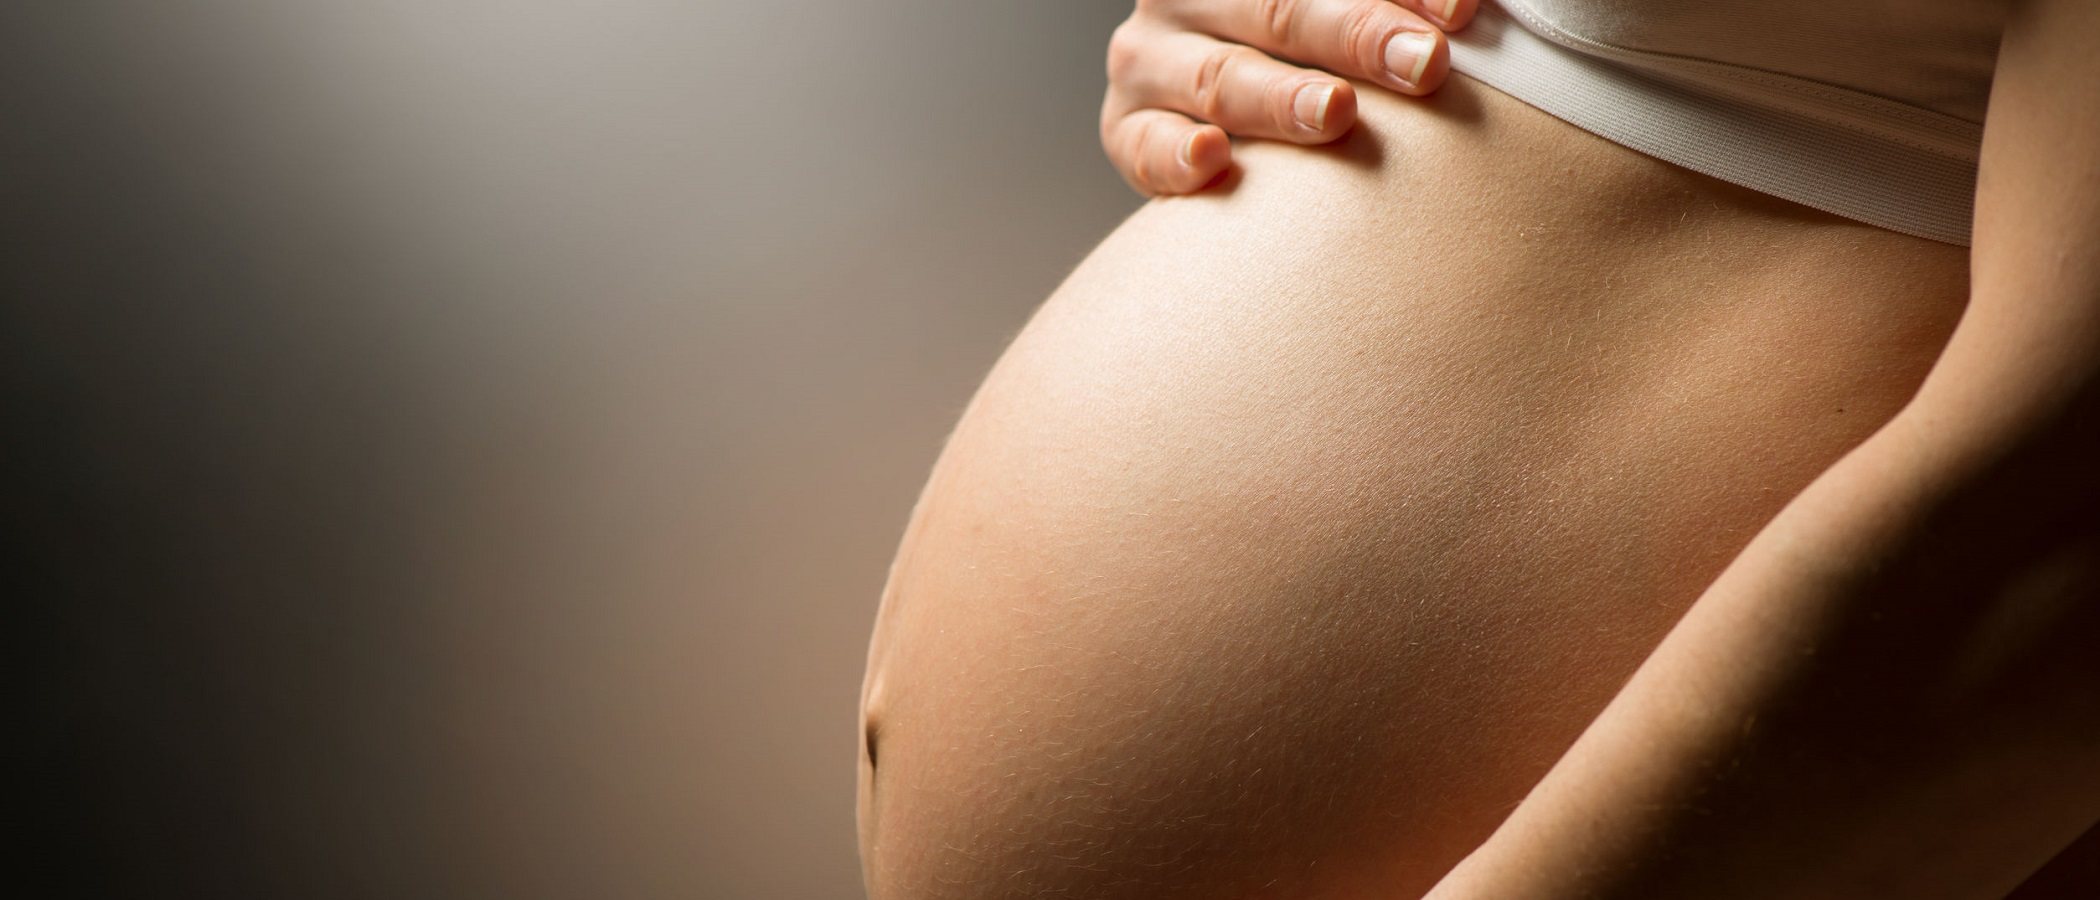 7 consejos de belleza simples para mujeres embarazadas